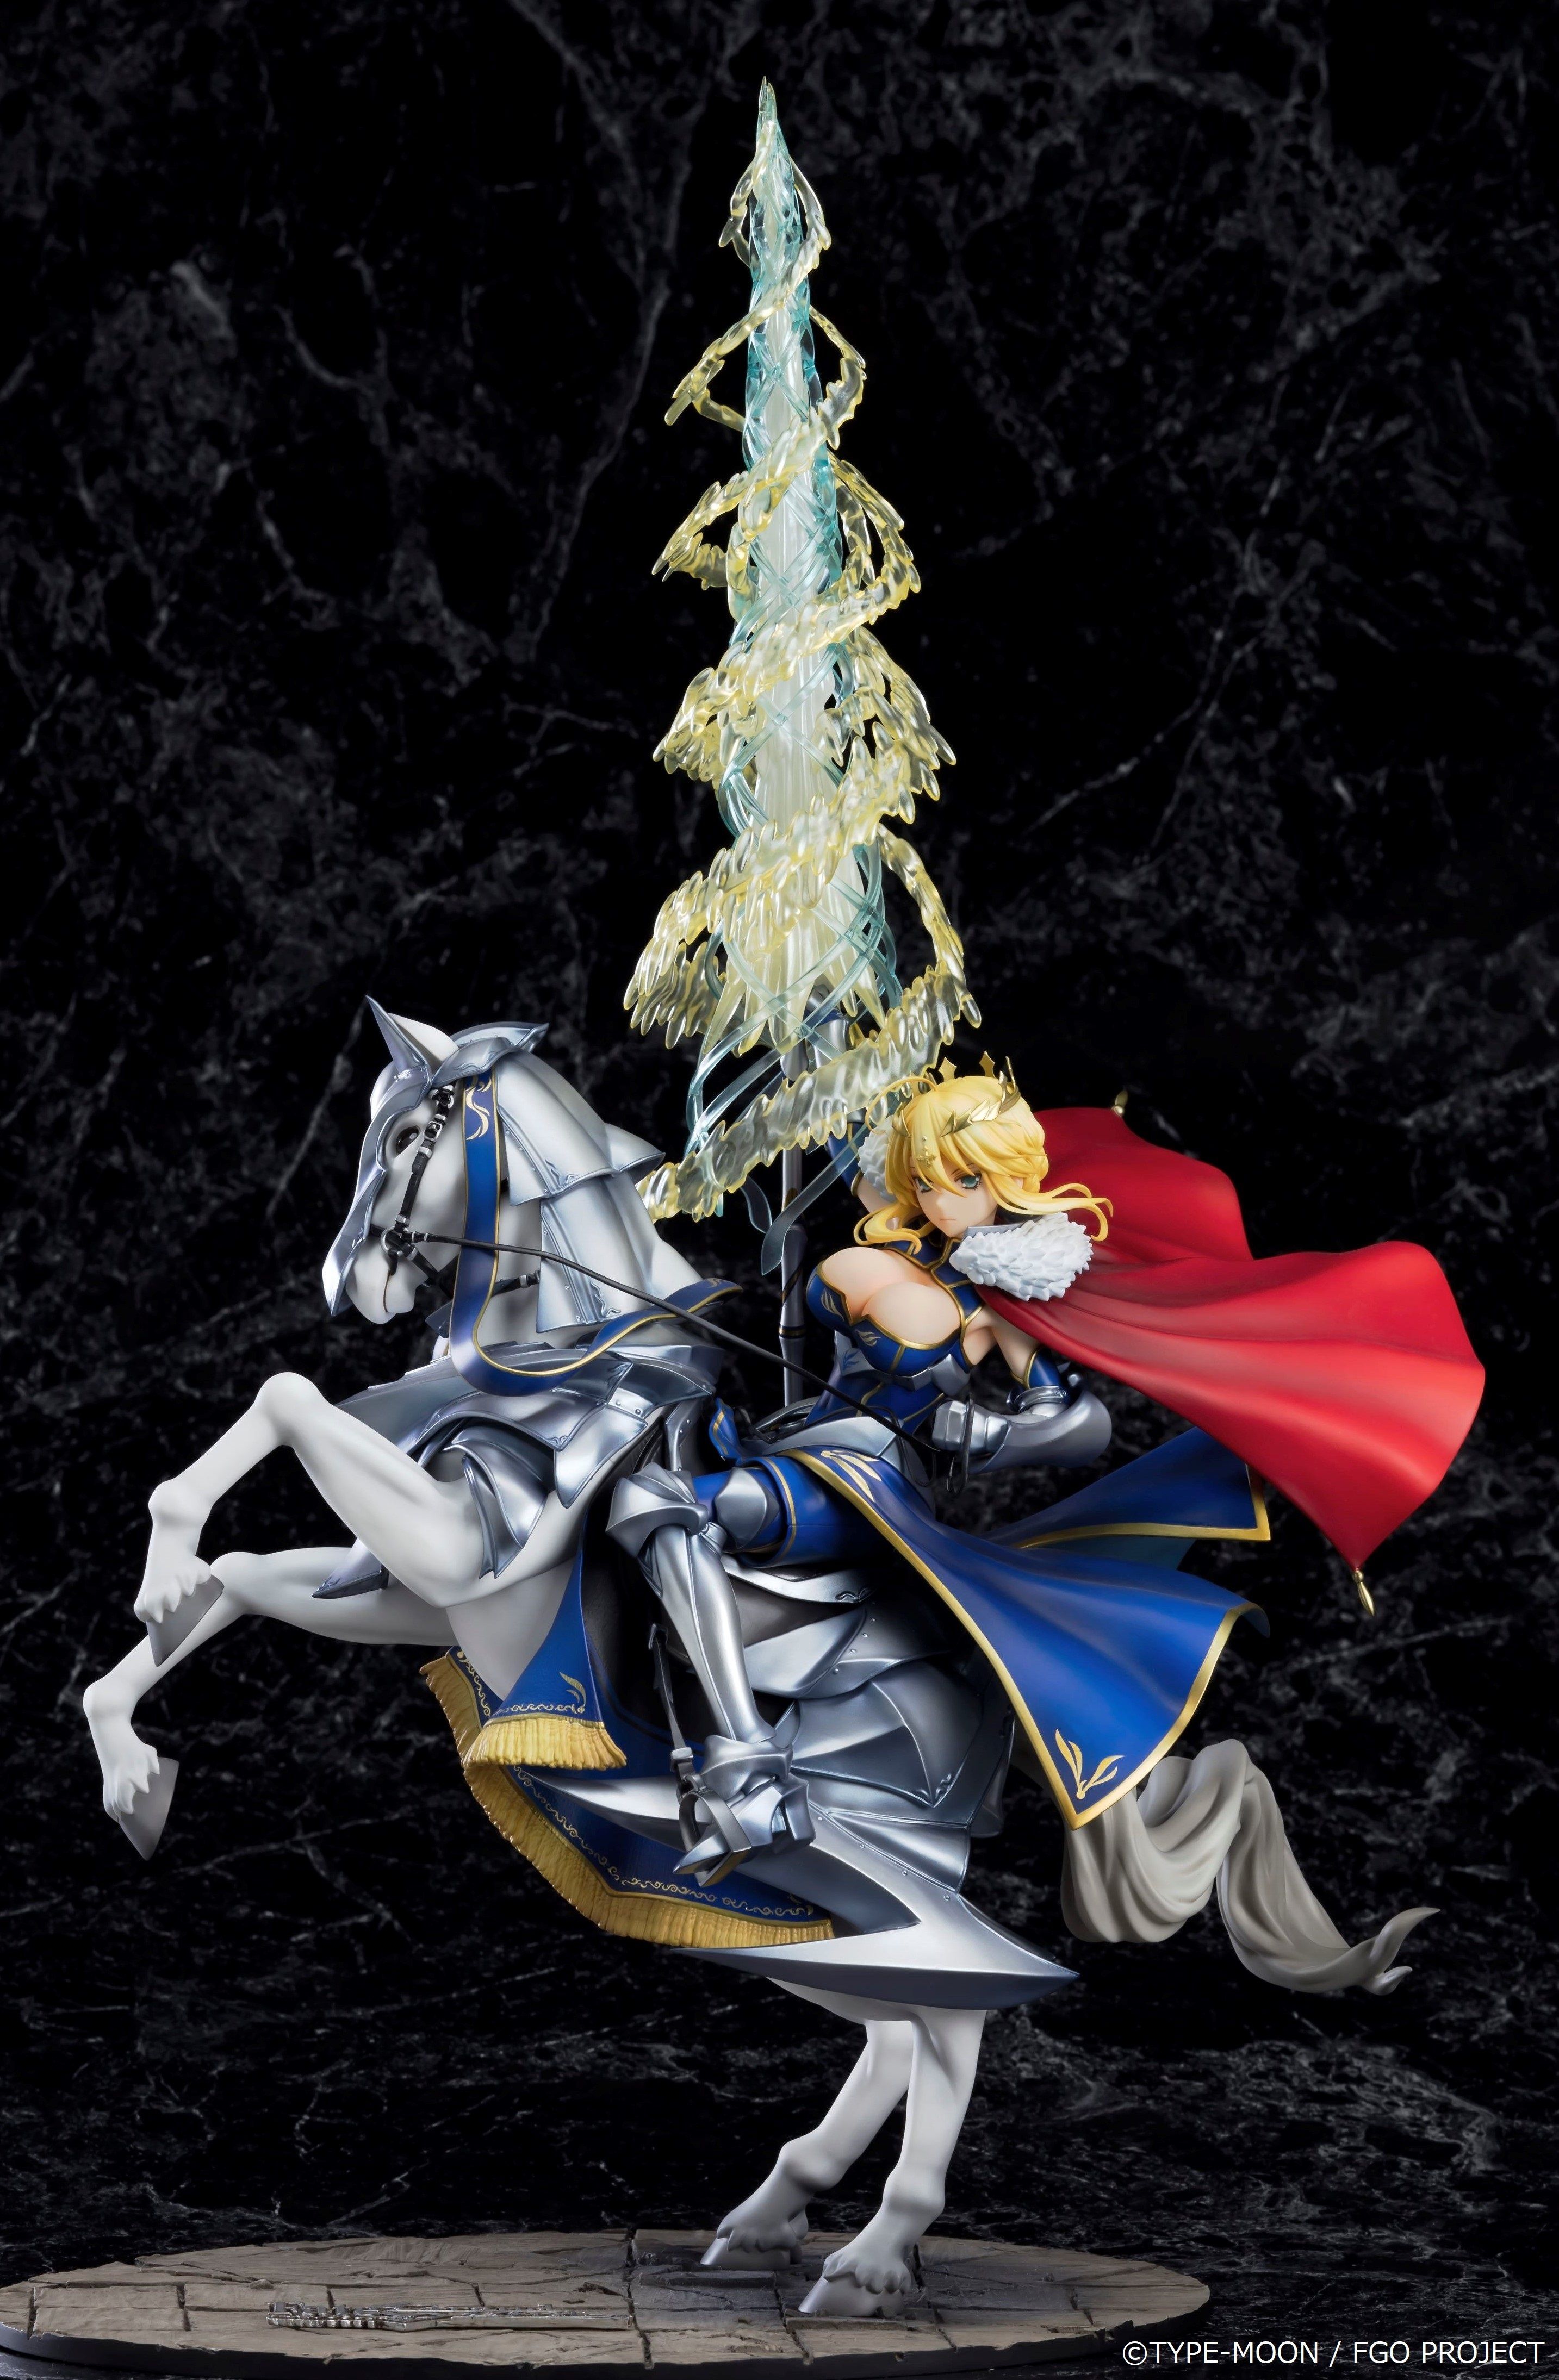 Fate Grand Orderより 騎士王 を立体化 ランサー アルトリア ペンドラゴン を6月14日より予約開始 株式会社グッドスマイルカンパニーのプレスリリース